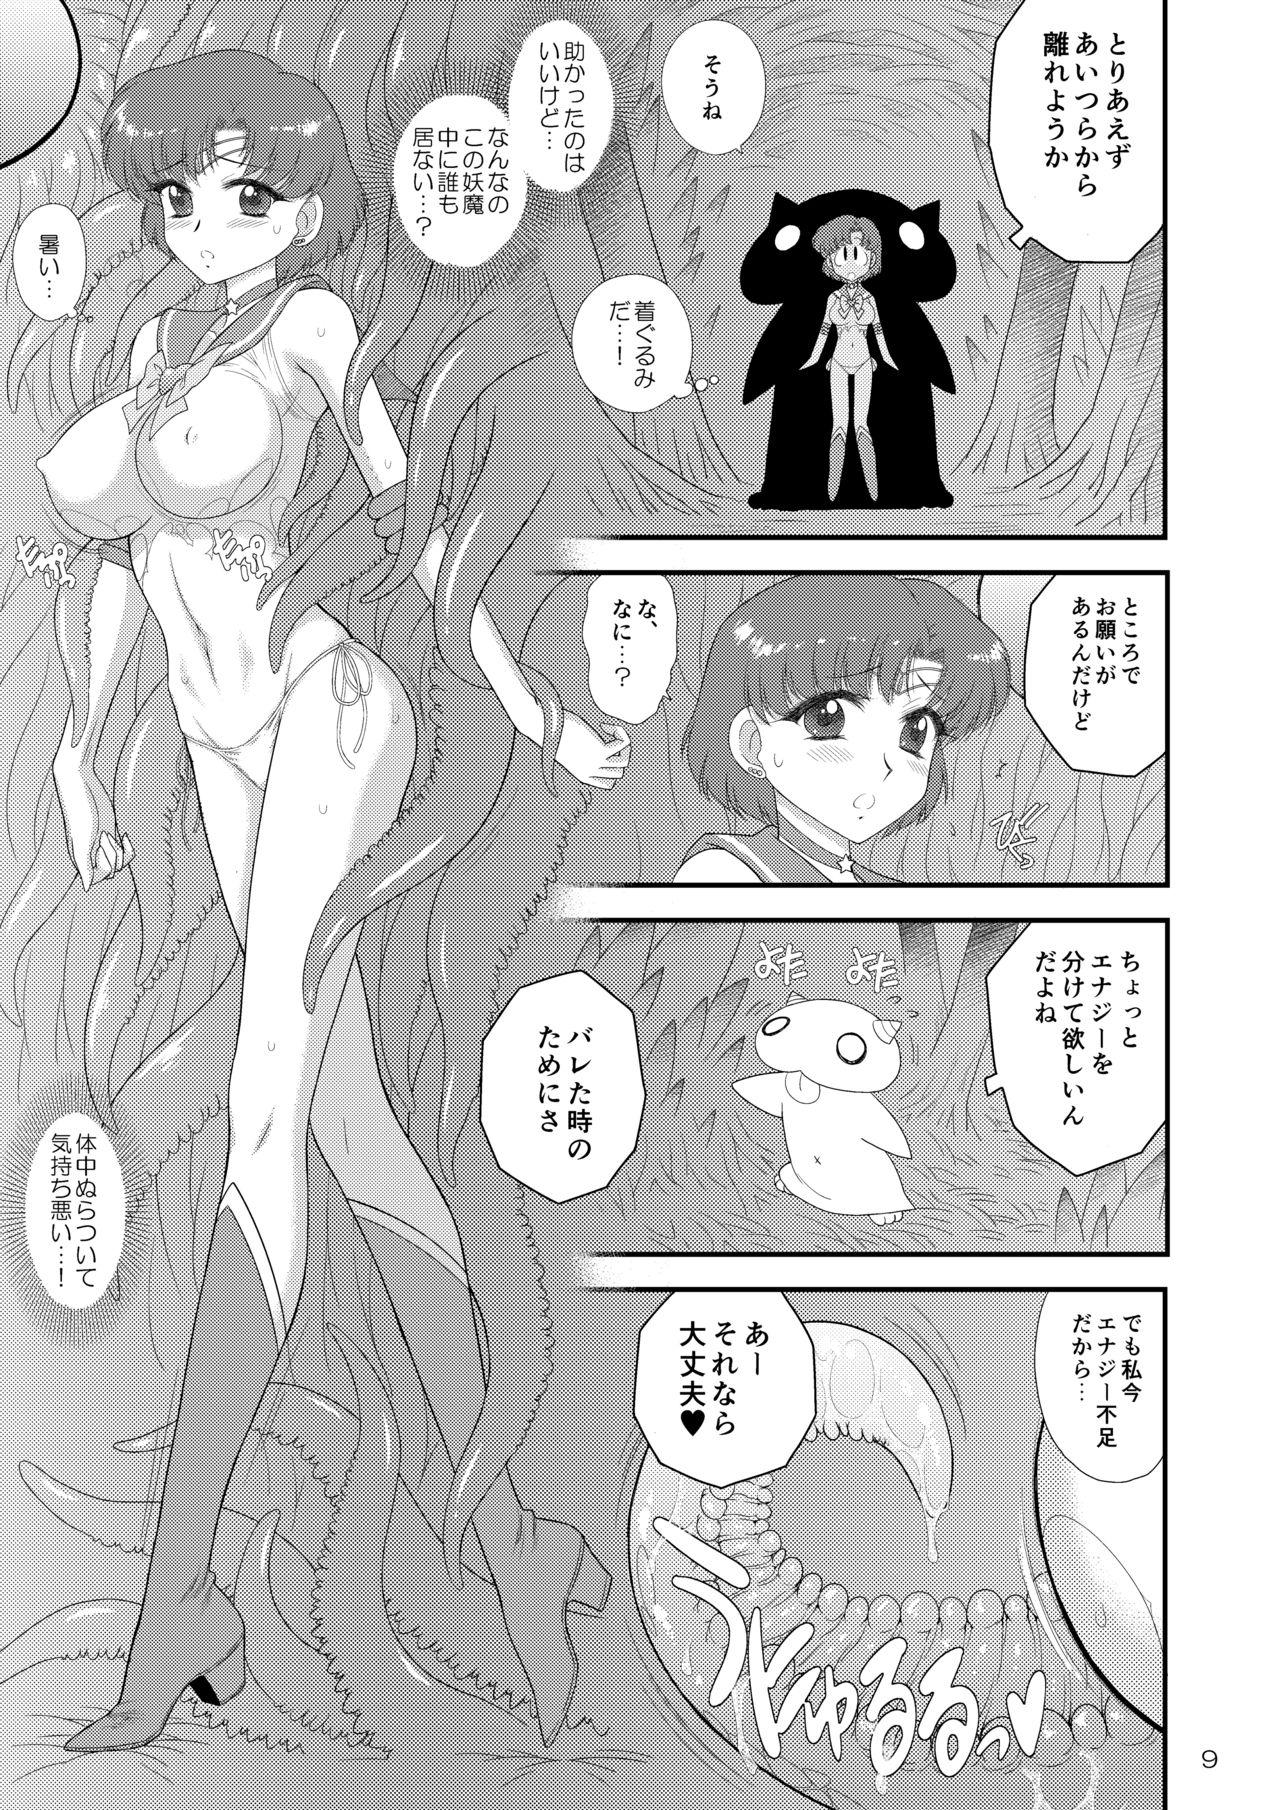 Grosso Kigurumi no Naka wa Massakari - Sailor moon Putinha - Page 9